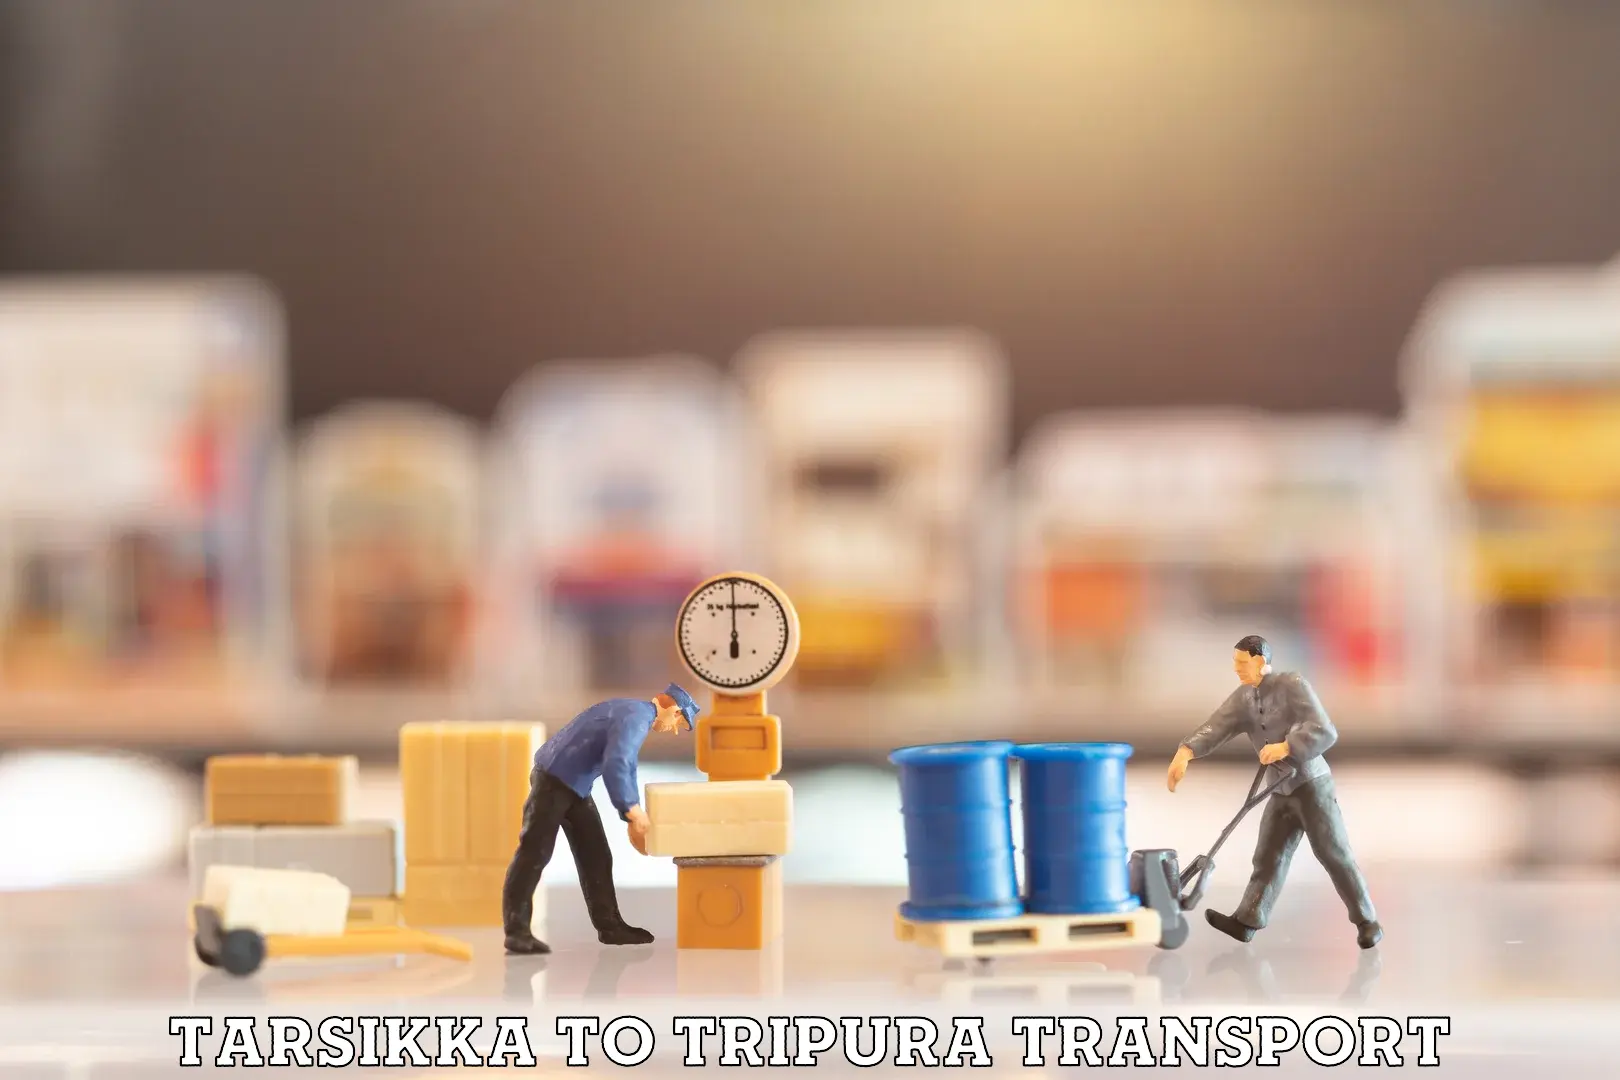 Truck transport companies in India Tarsikka to Aambasa